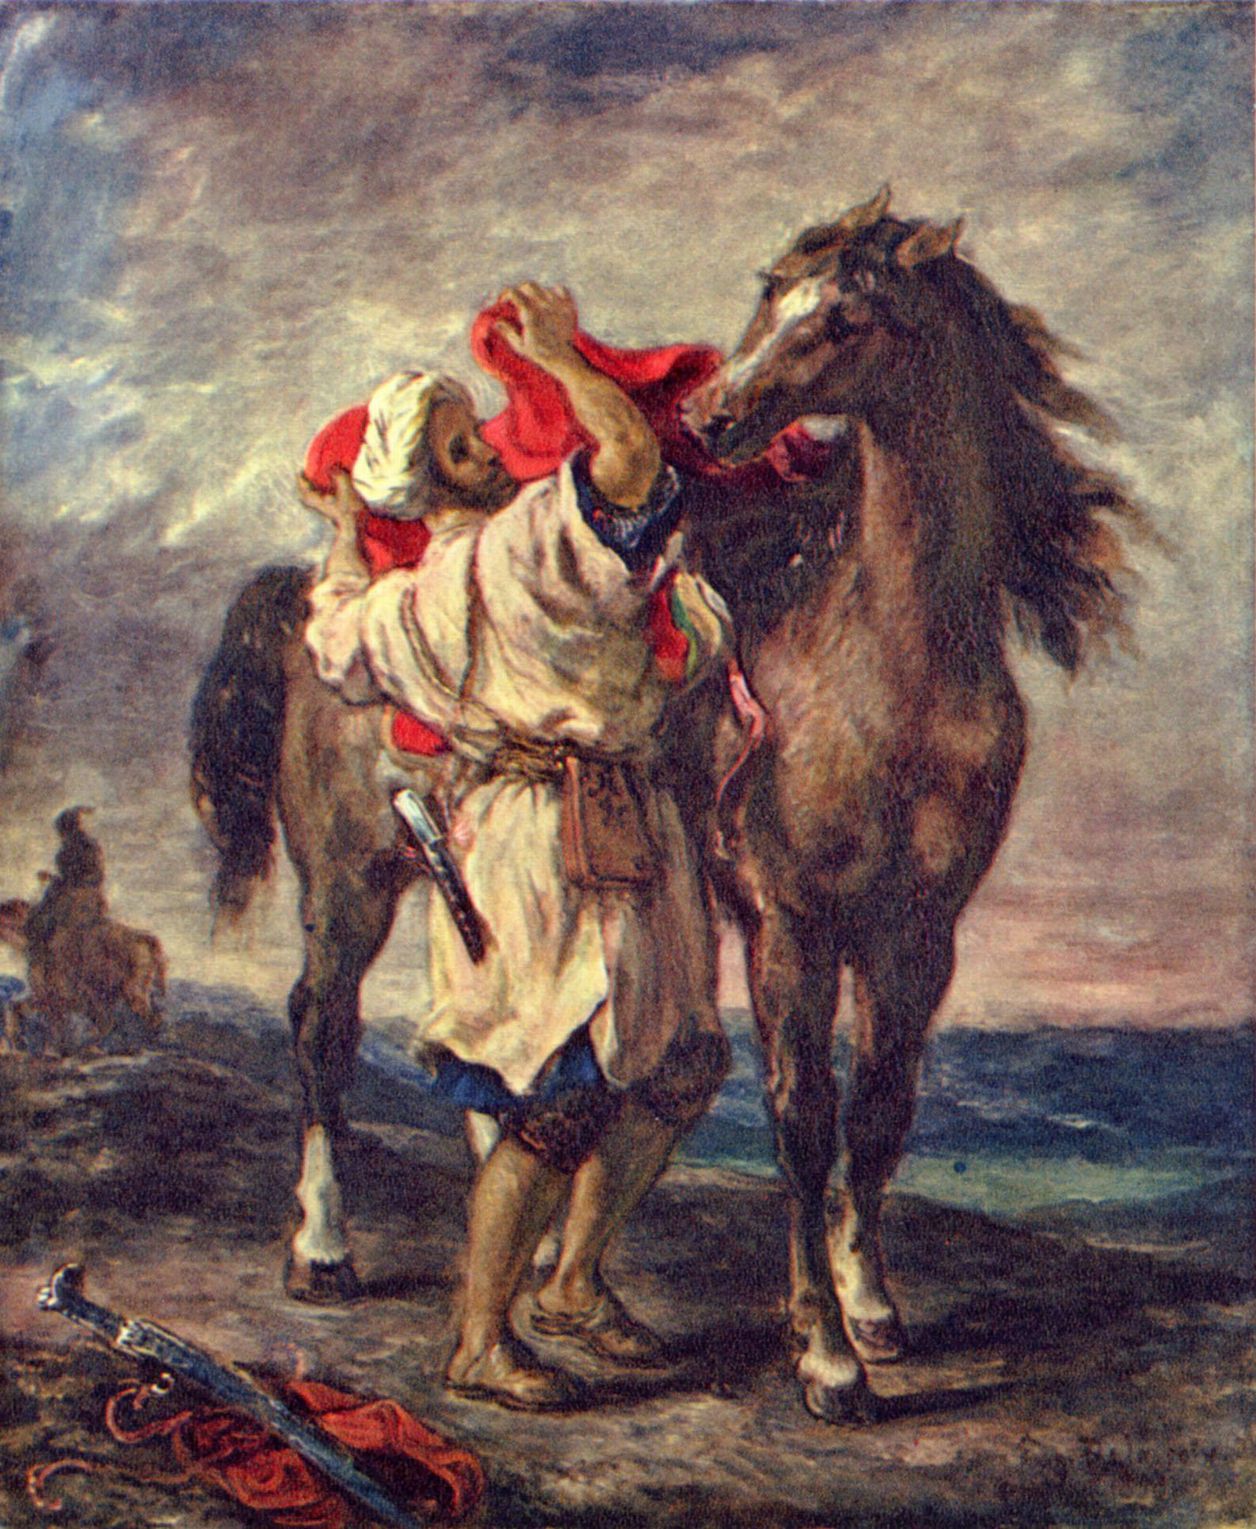 Eugne Ferdinand Victor Delacroix: Marokkaner beim Satteln seines Pferdes